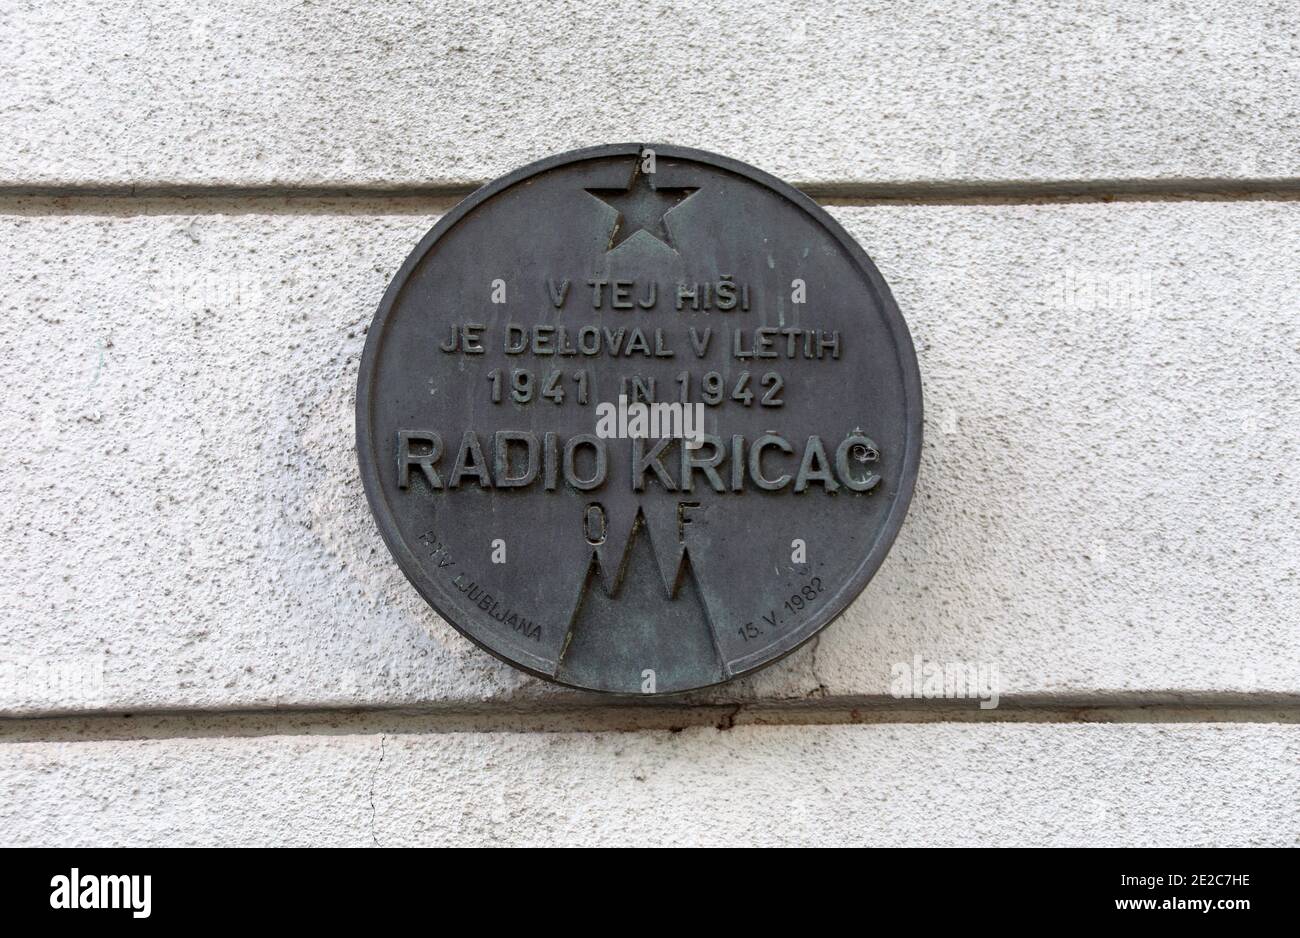 Radio Kricac memorial plaque in Ljubljana Stock Photo - Alamy